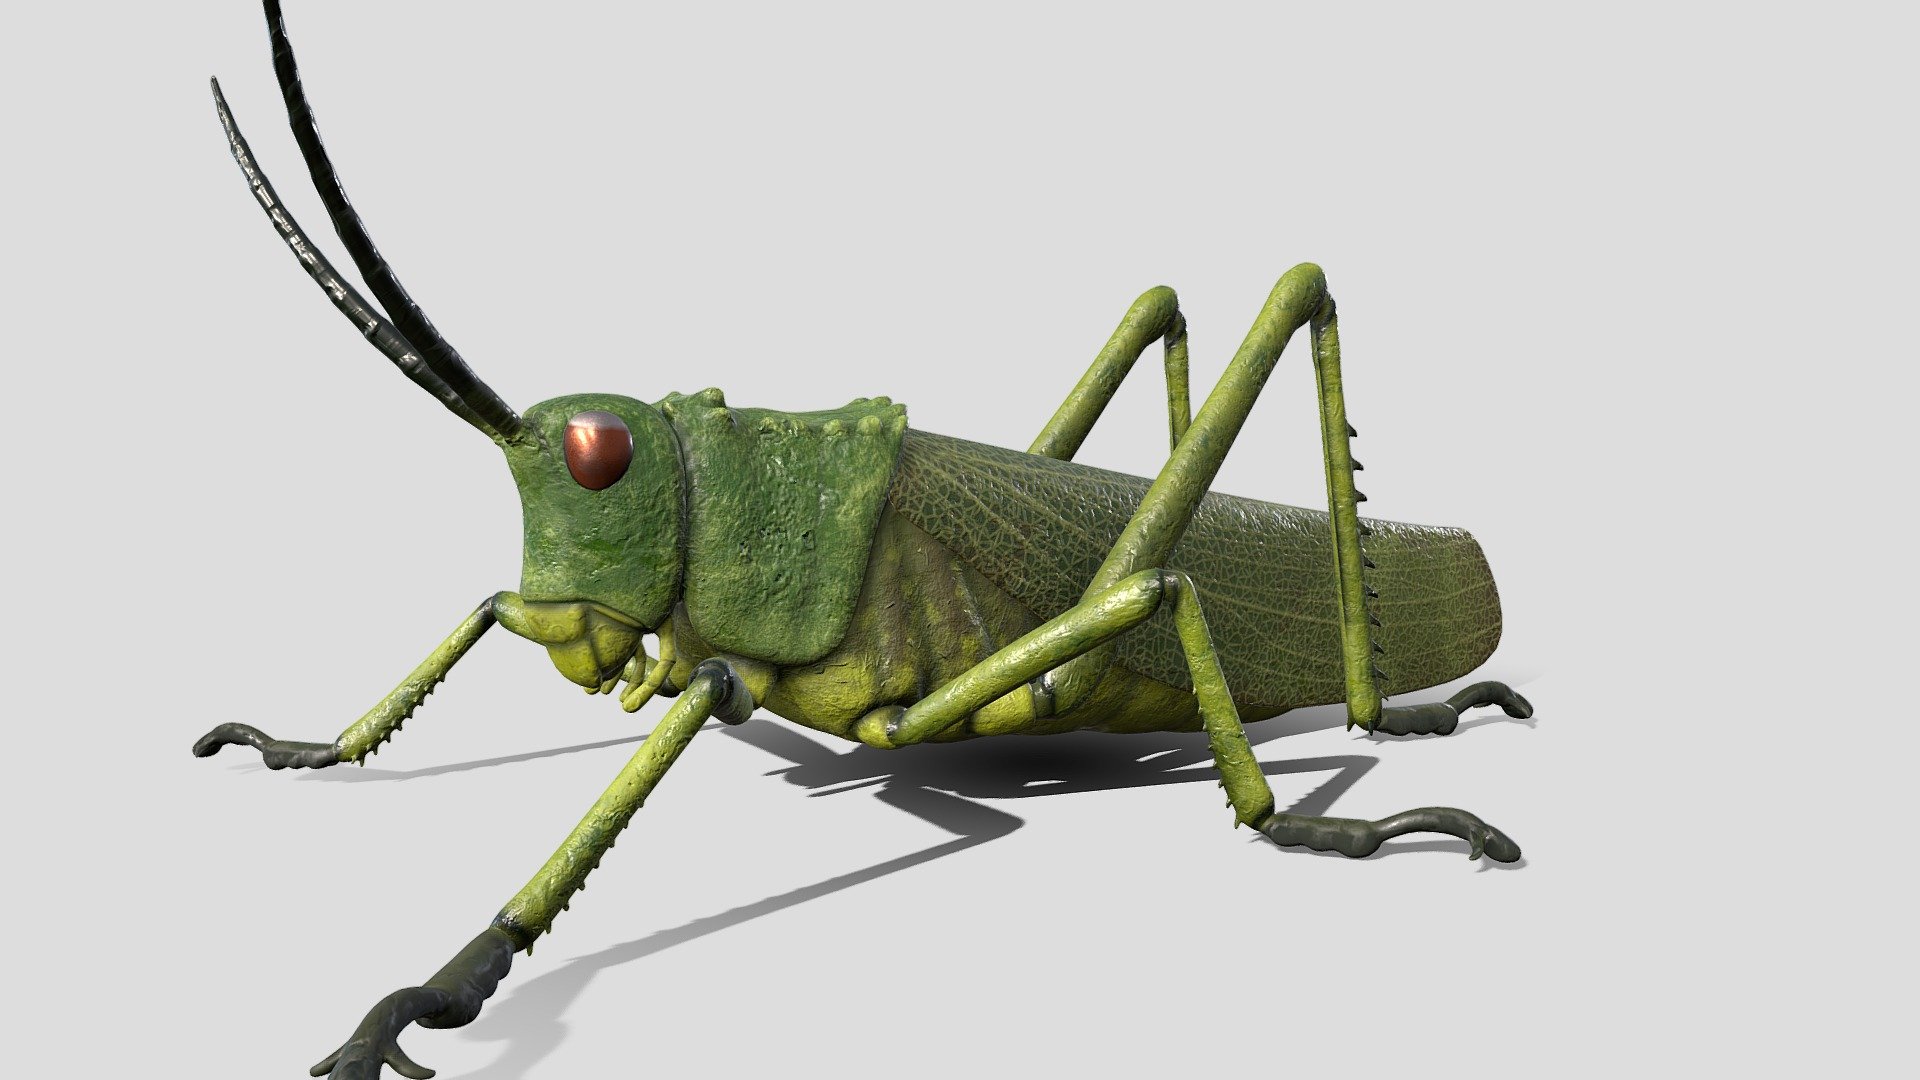 Green milkweed locust / African bush grasshopper - Grasshopper - 3D model by drgrobbs 3d model